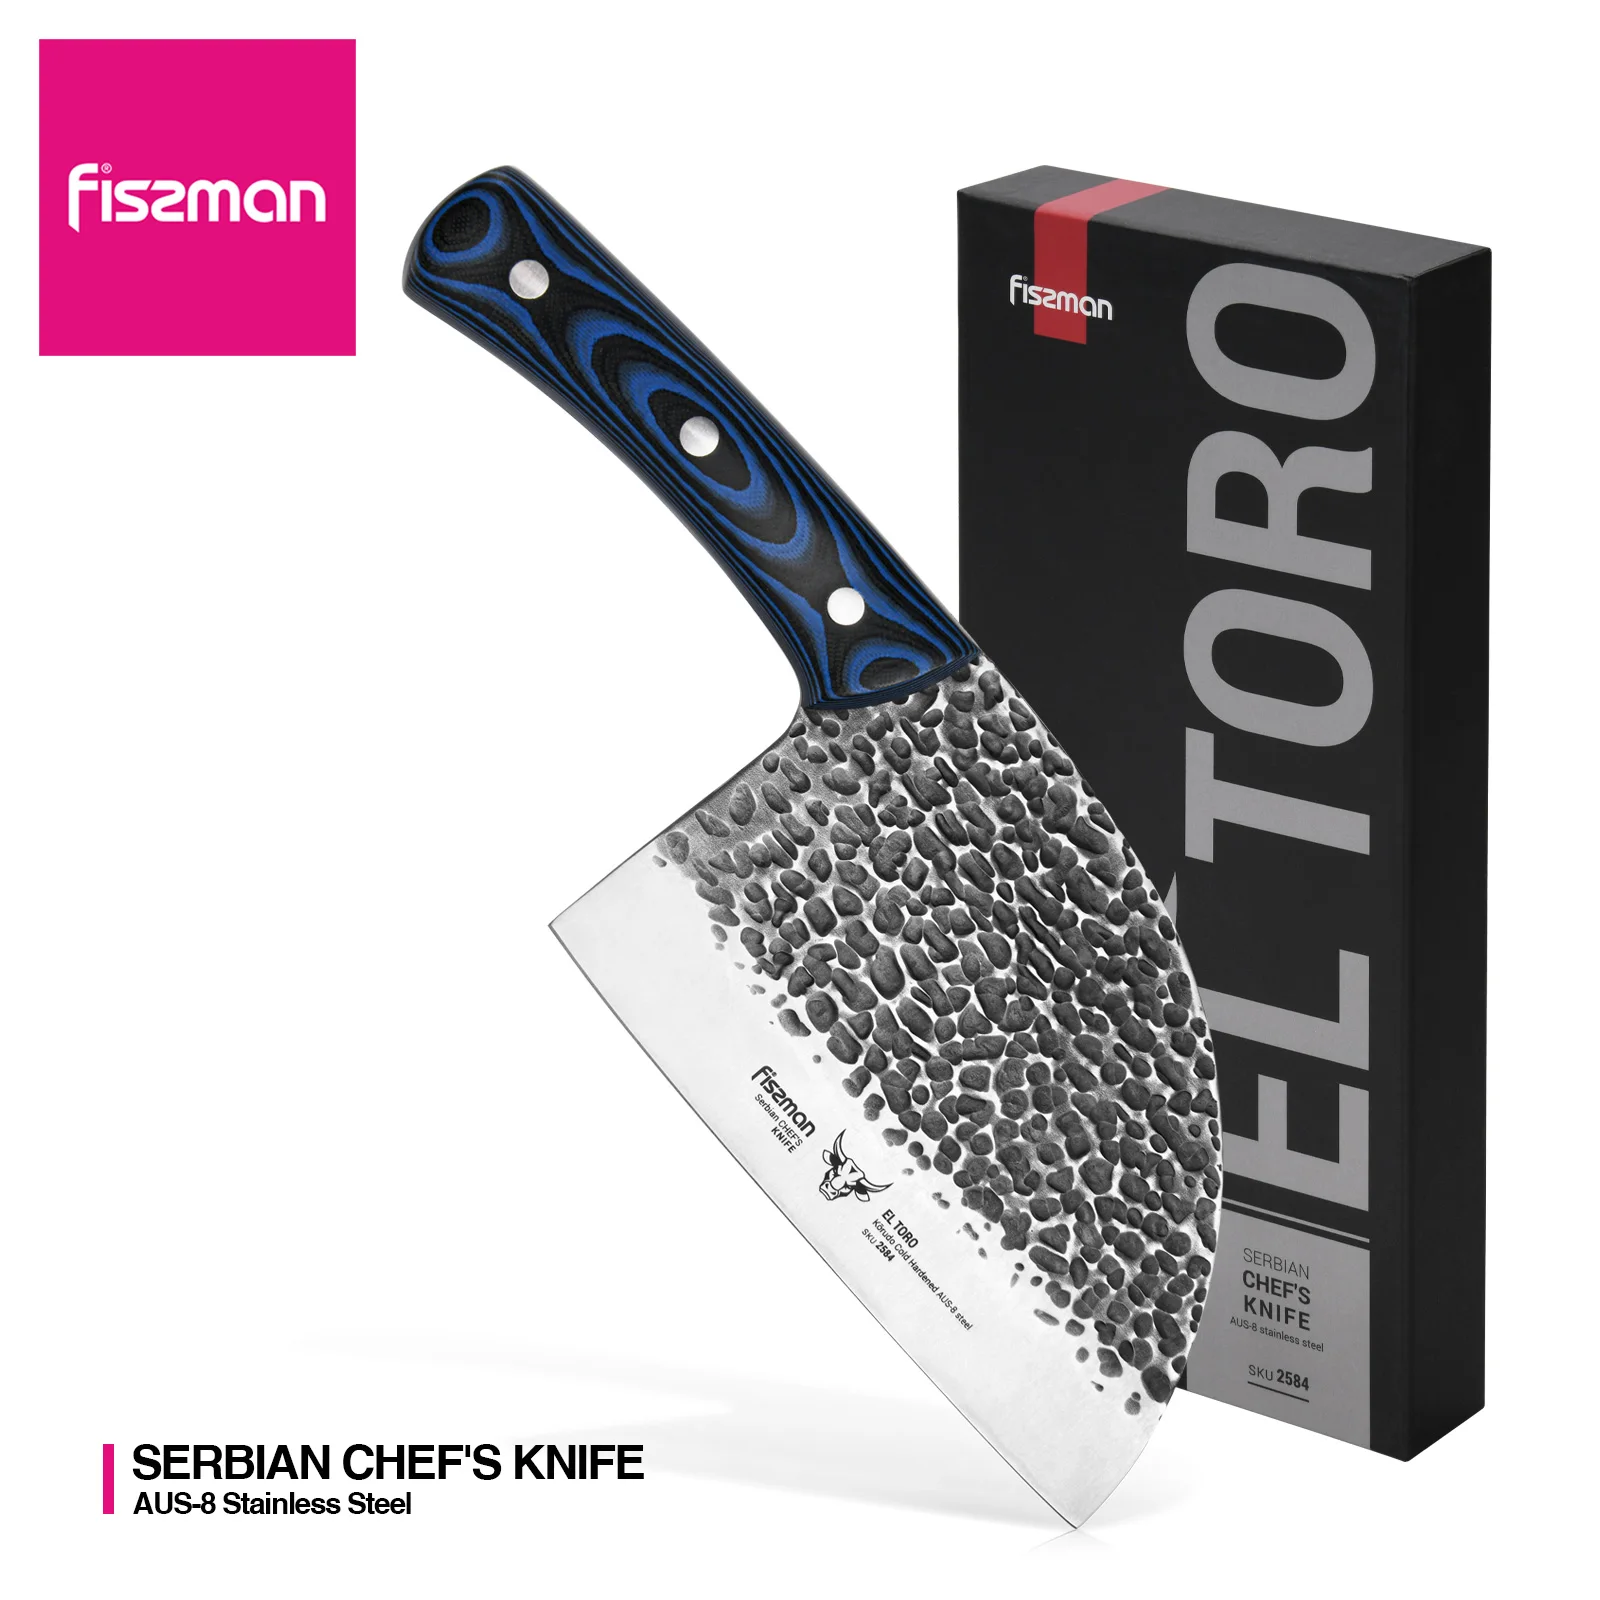 Fissman сербский шеф-повара нож EL TORO 18 см AUS-8 стальные кухонные ножи - купить по